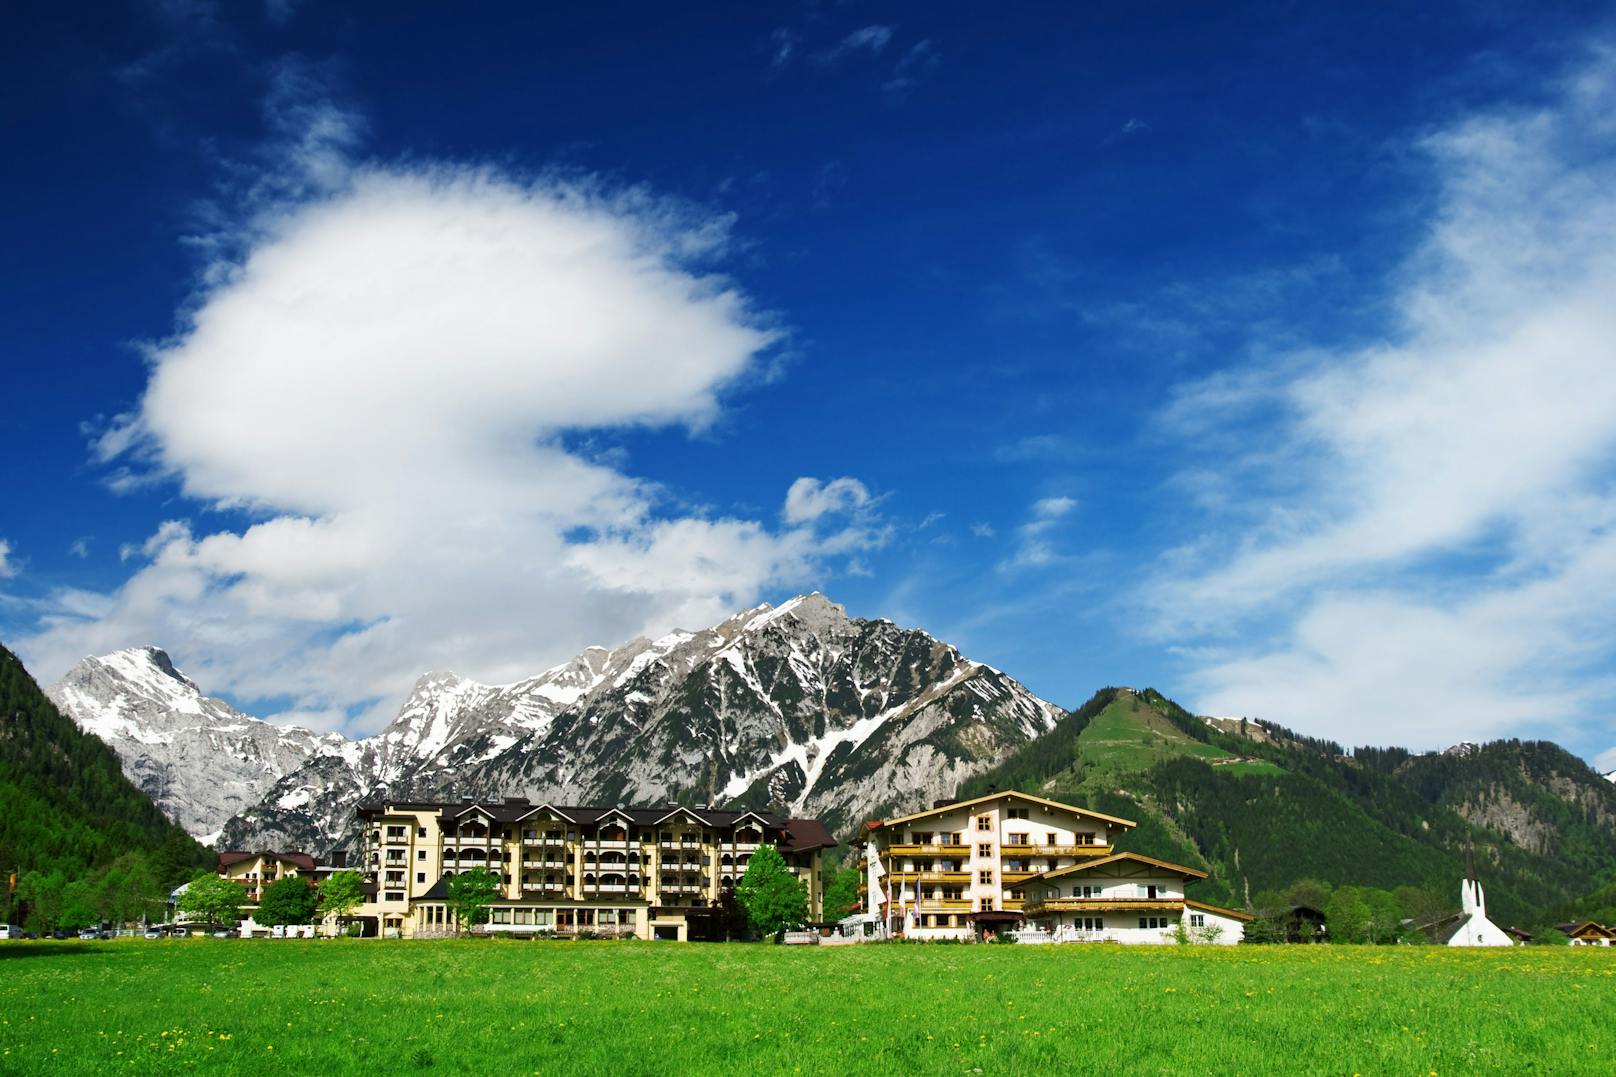 Im malerischen Salzburger Lungau soll ein Groß-Hotel gebaut werden – die Bevölkerung will das zu verhindern wissen. (Symbolbild)